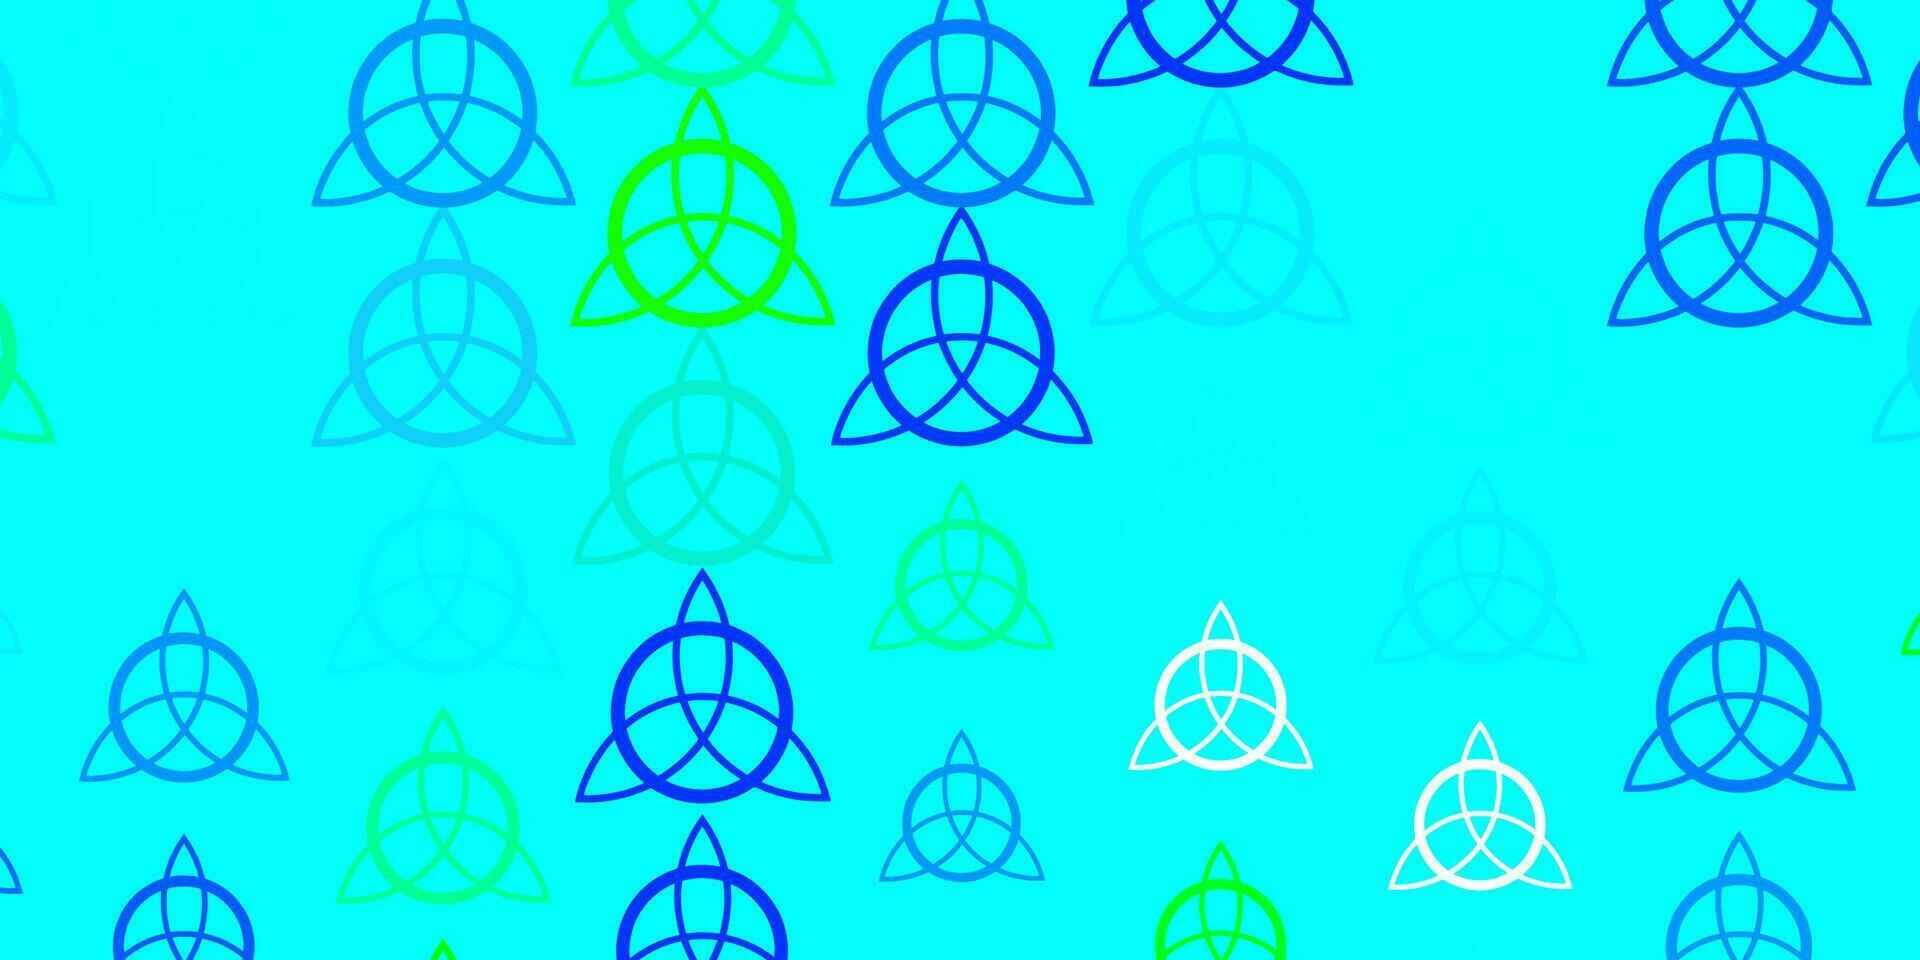 ljusblå, grön vektorbakgrund med ockulta symboler. vektor